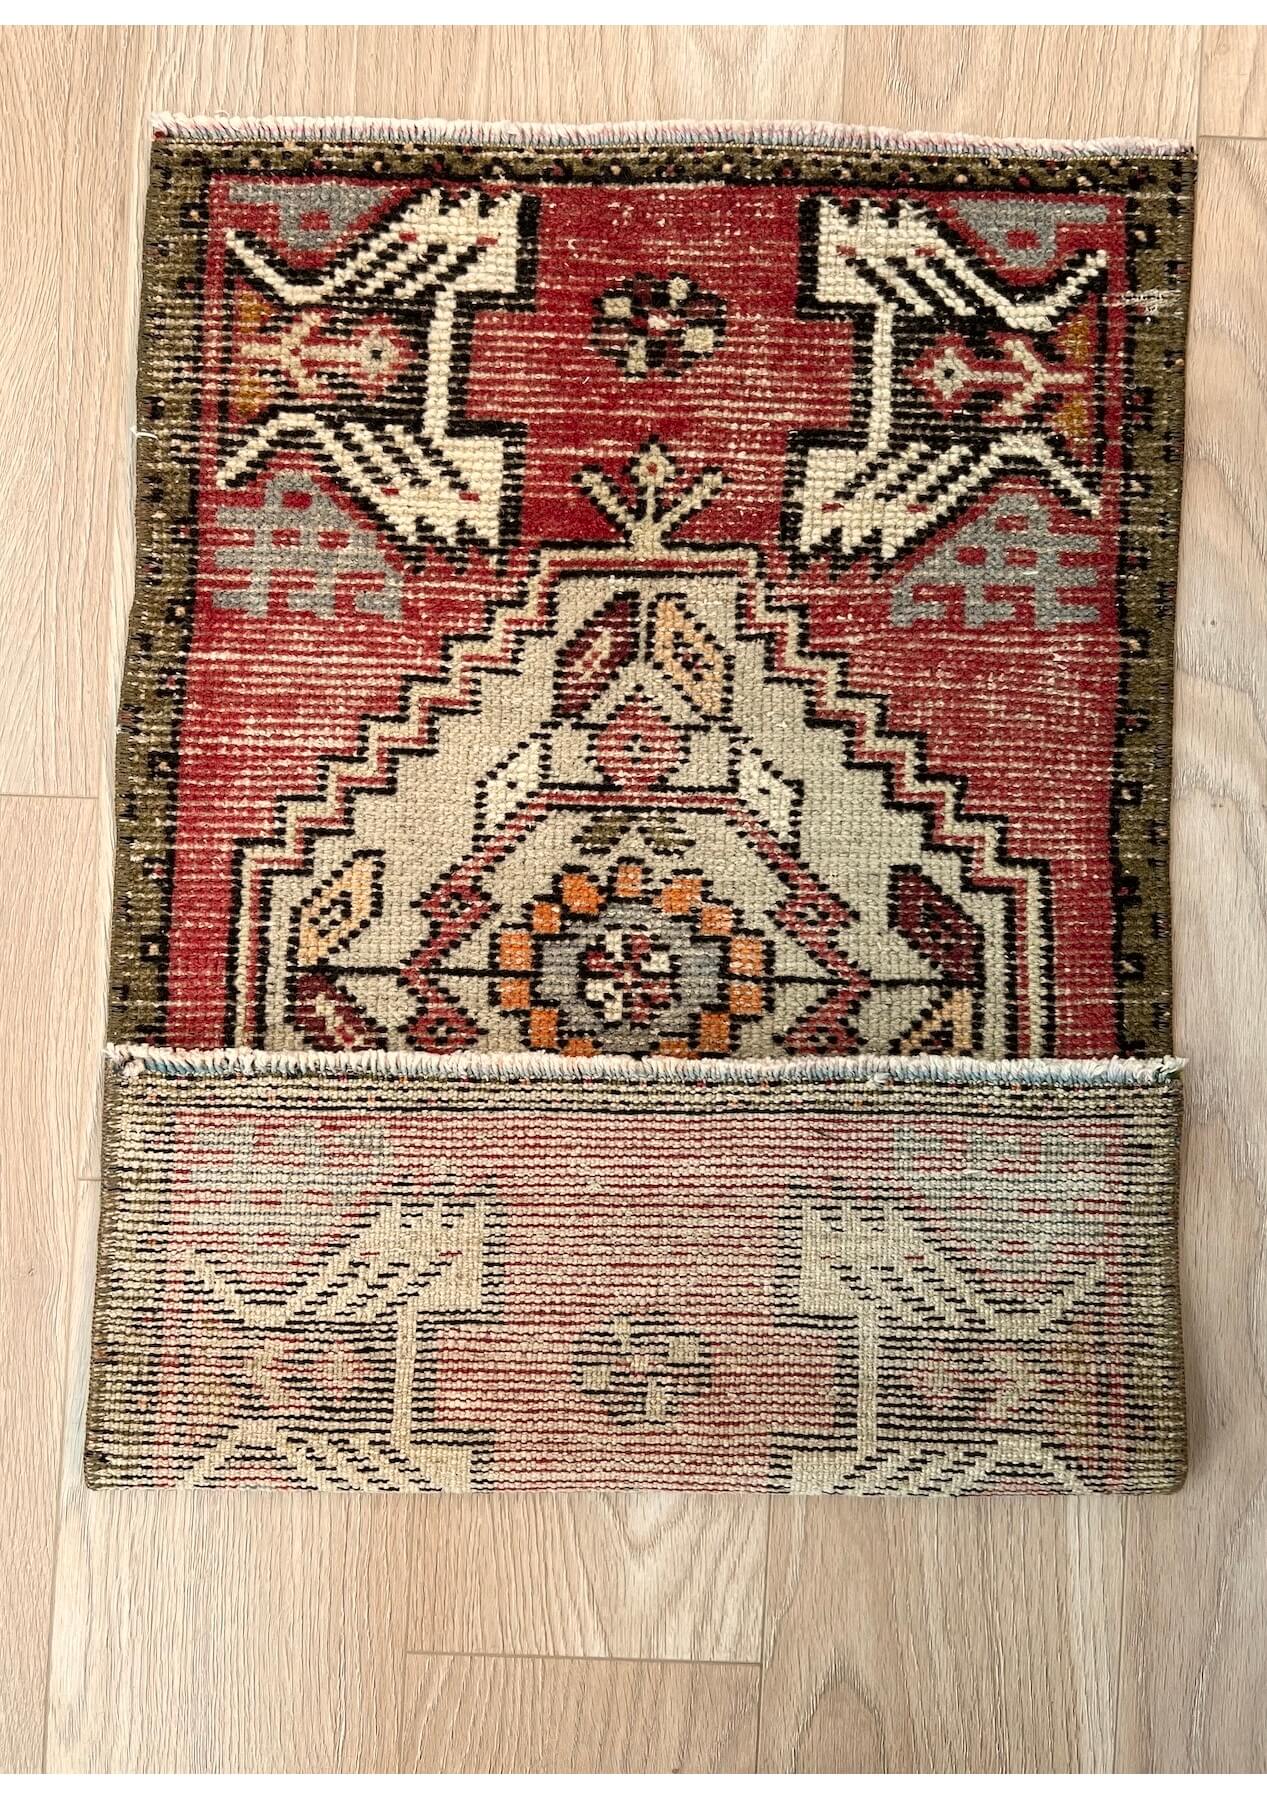 Tara - Vintage Mini Red Area Rug - kudenrugs